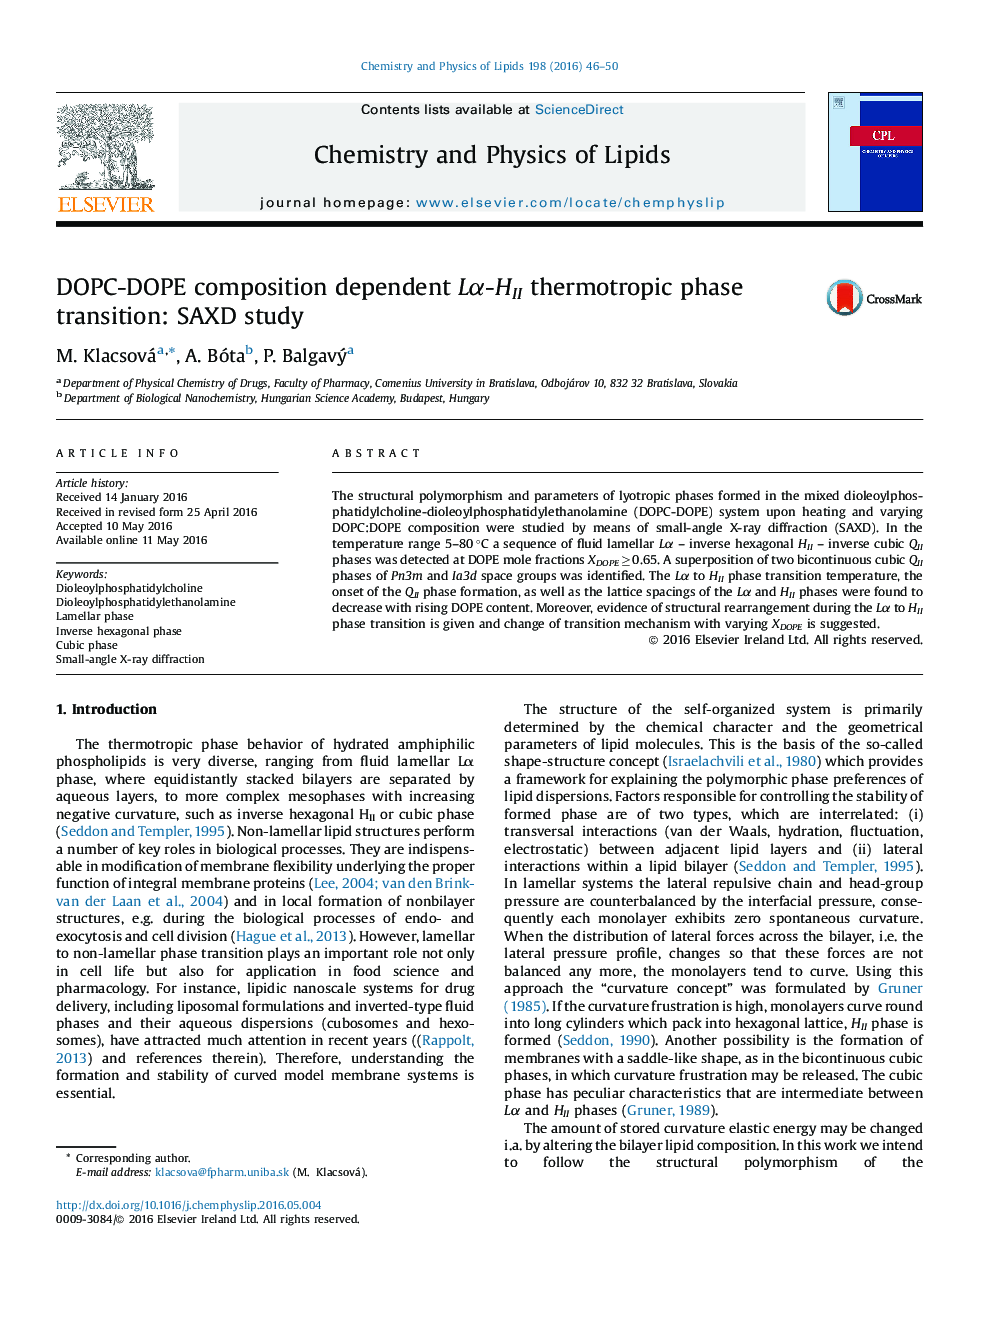 انتقال فاز دماگرای وابسته Lα-HII ترکیب DOPC-DOPE: مطالعه SAXD